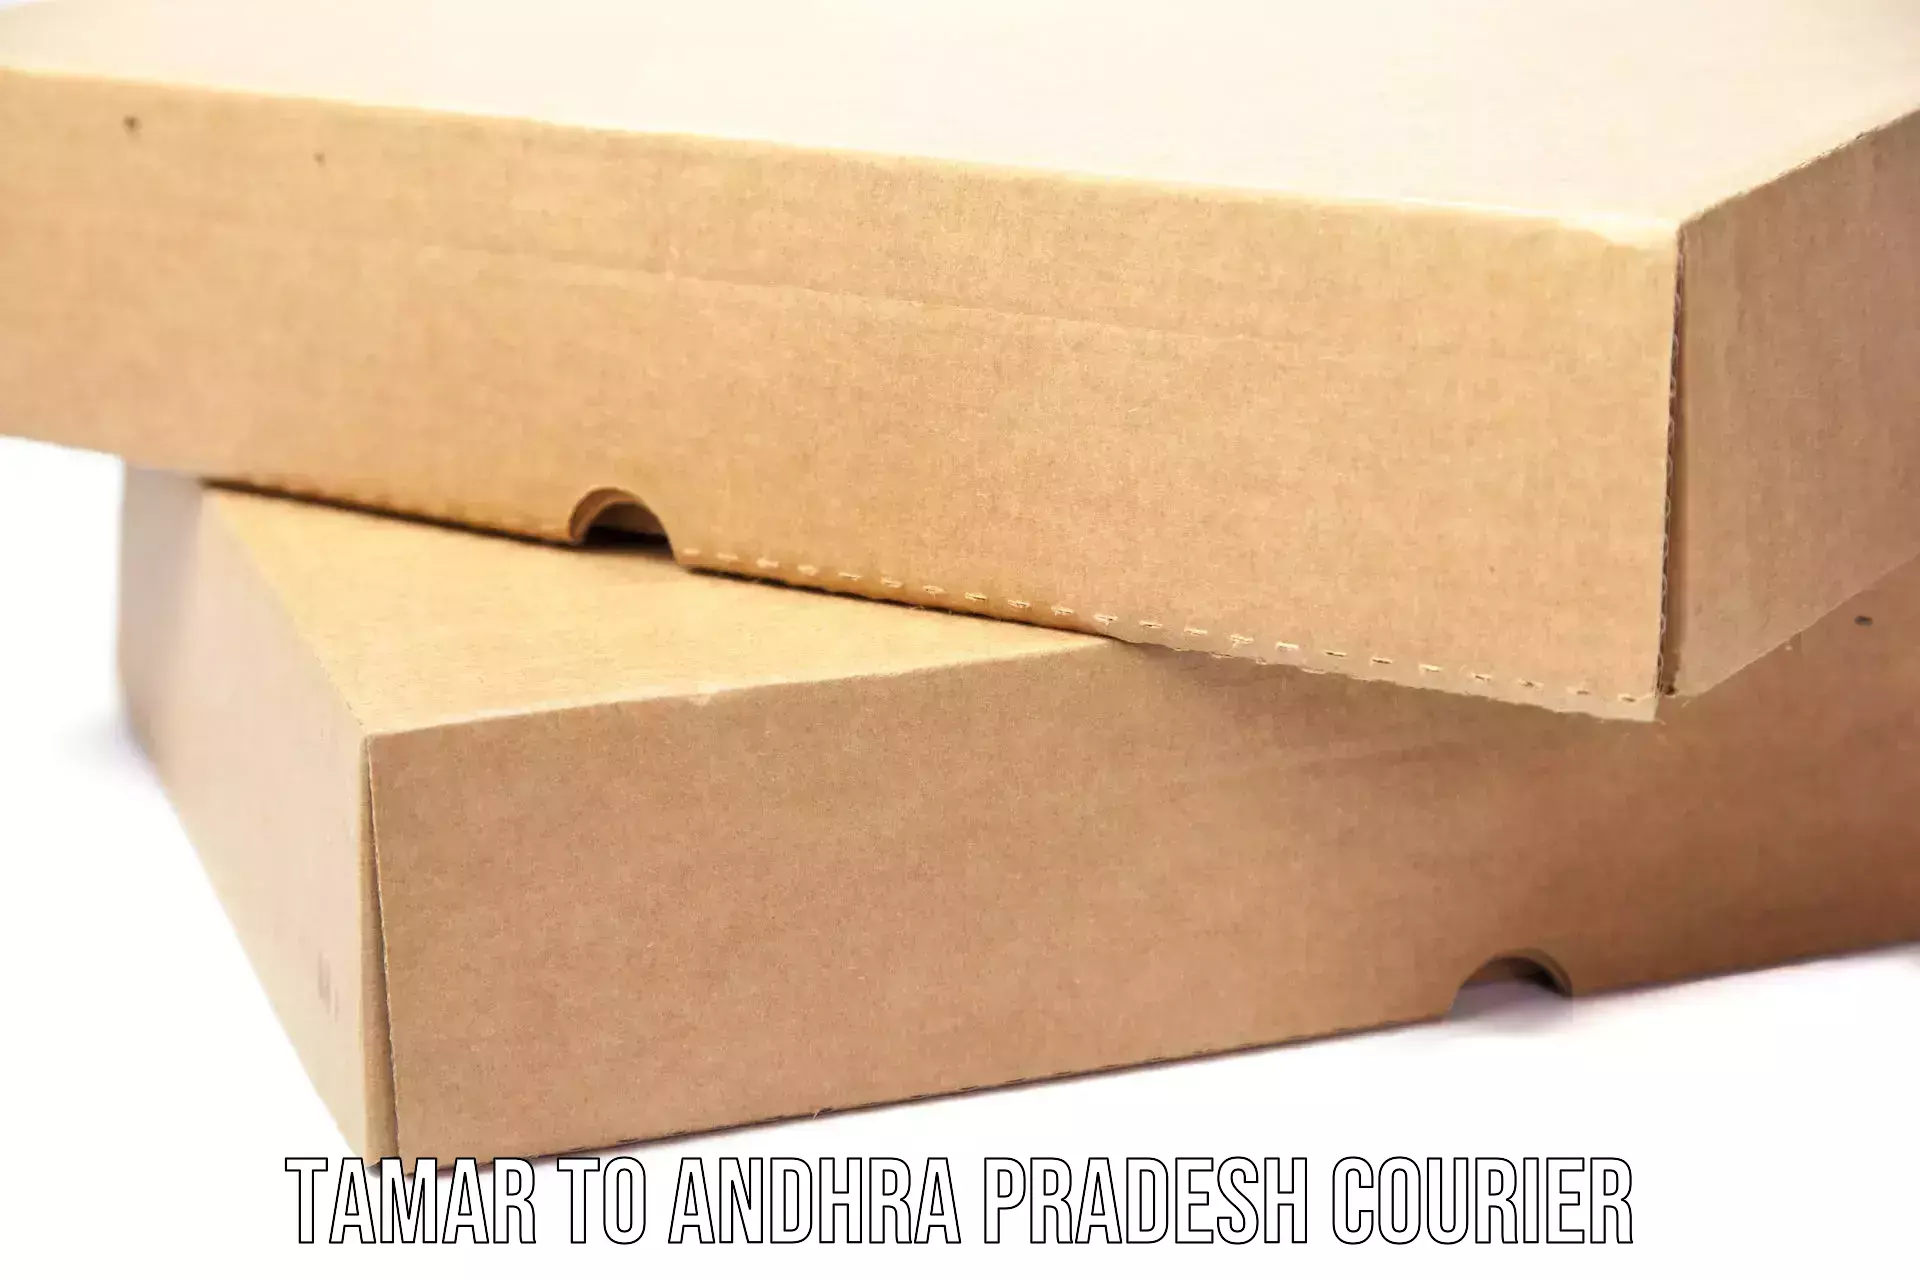 Custom courier packaging in Tamar to IIT Tirupati